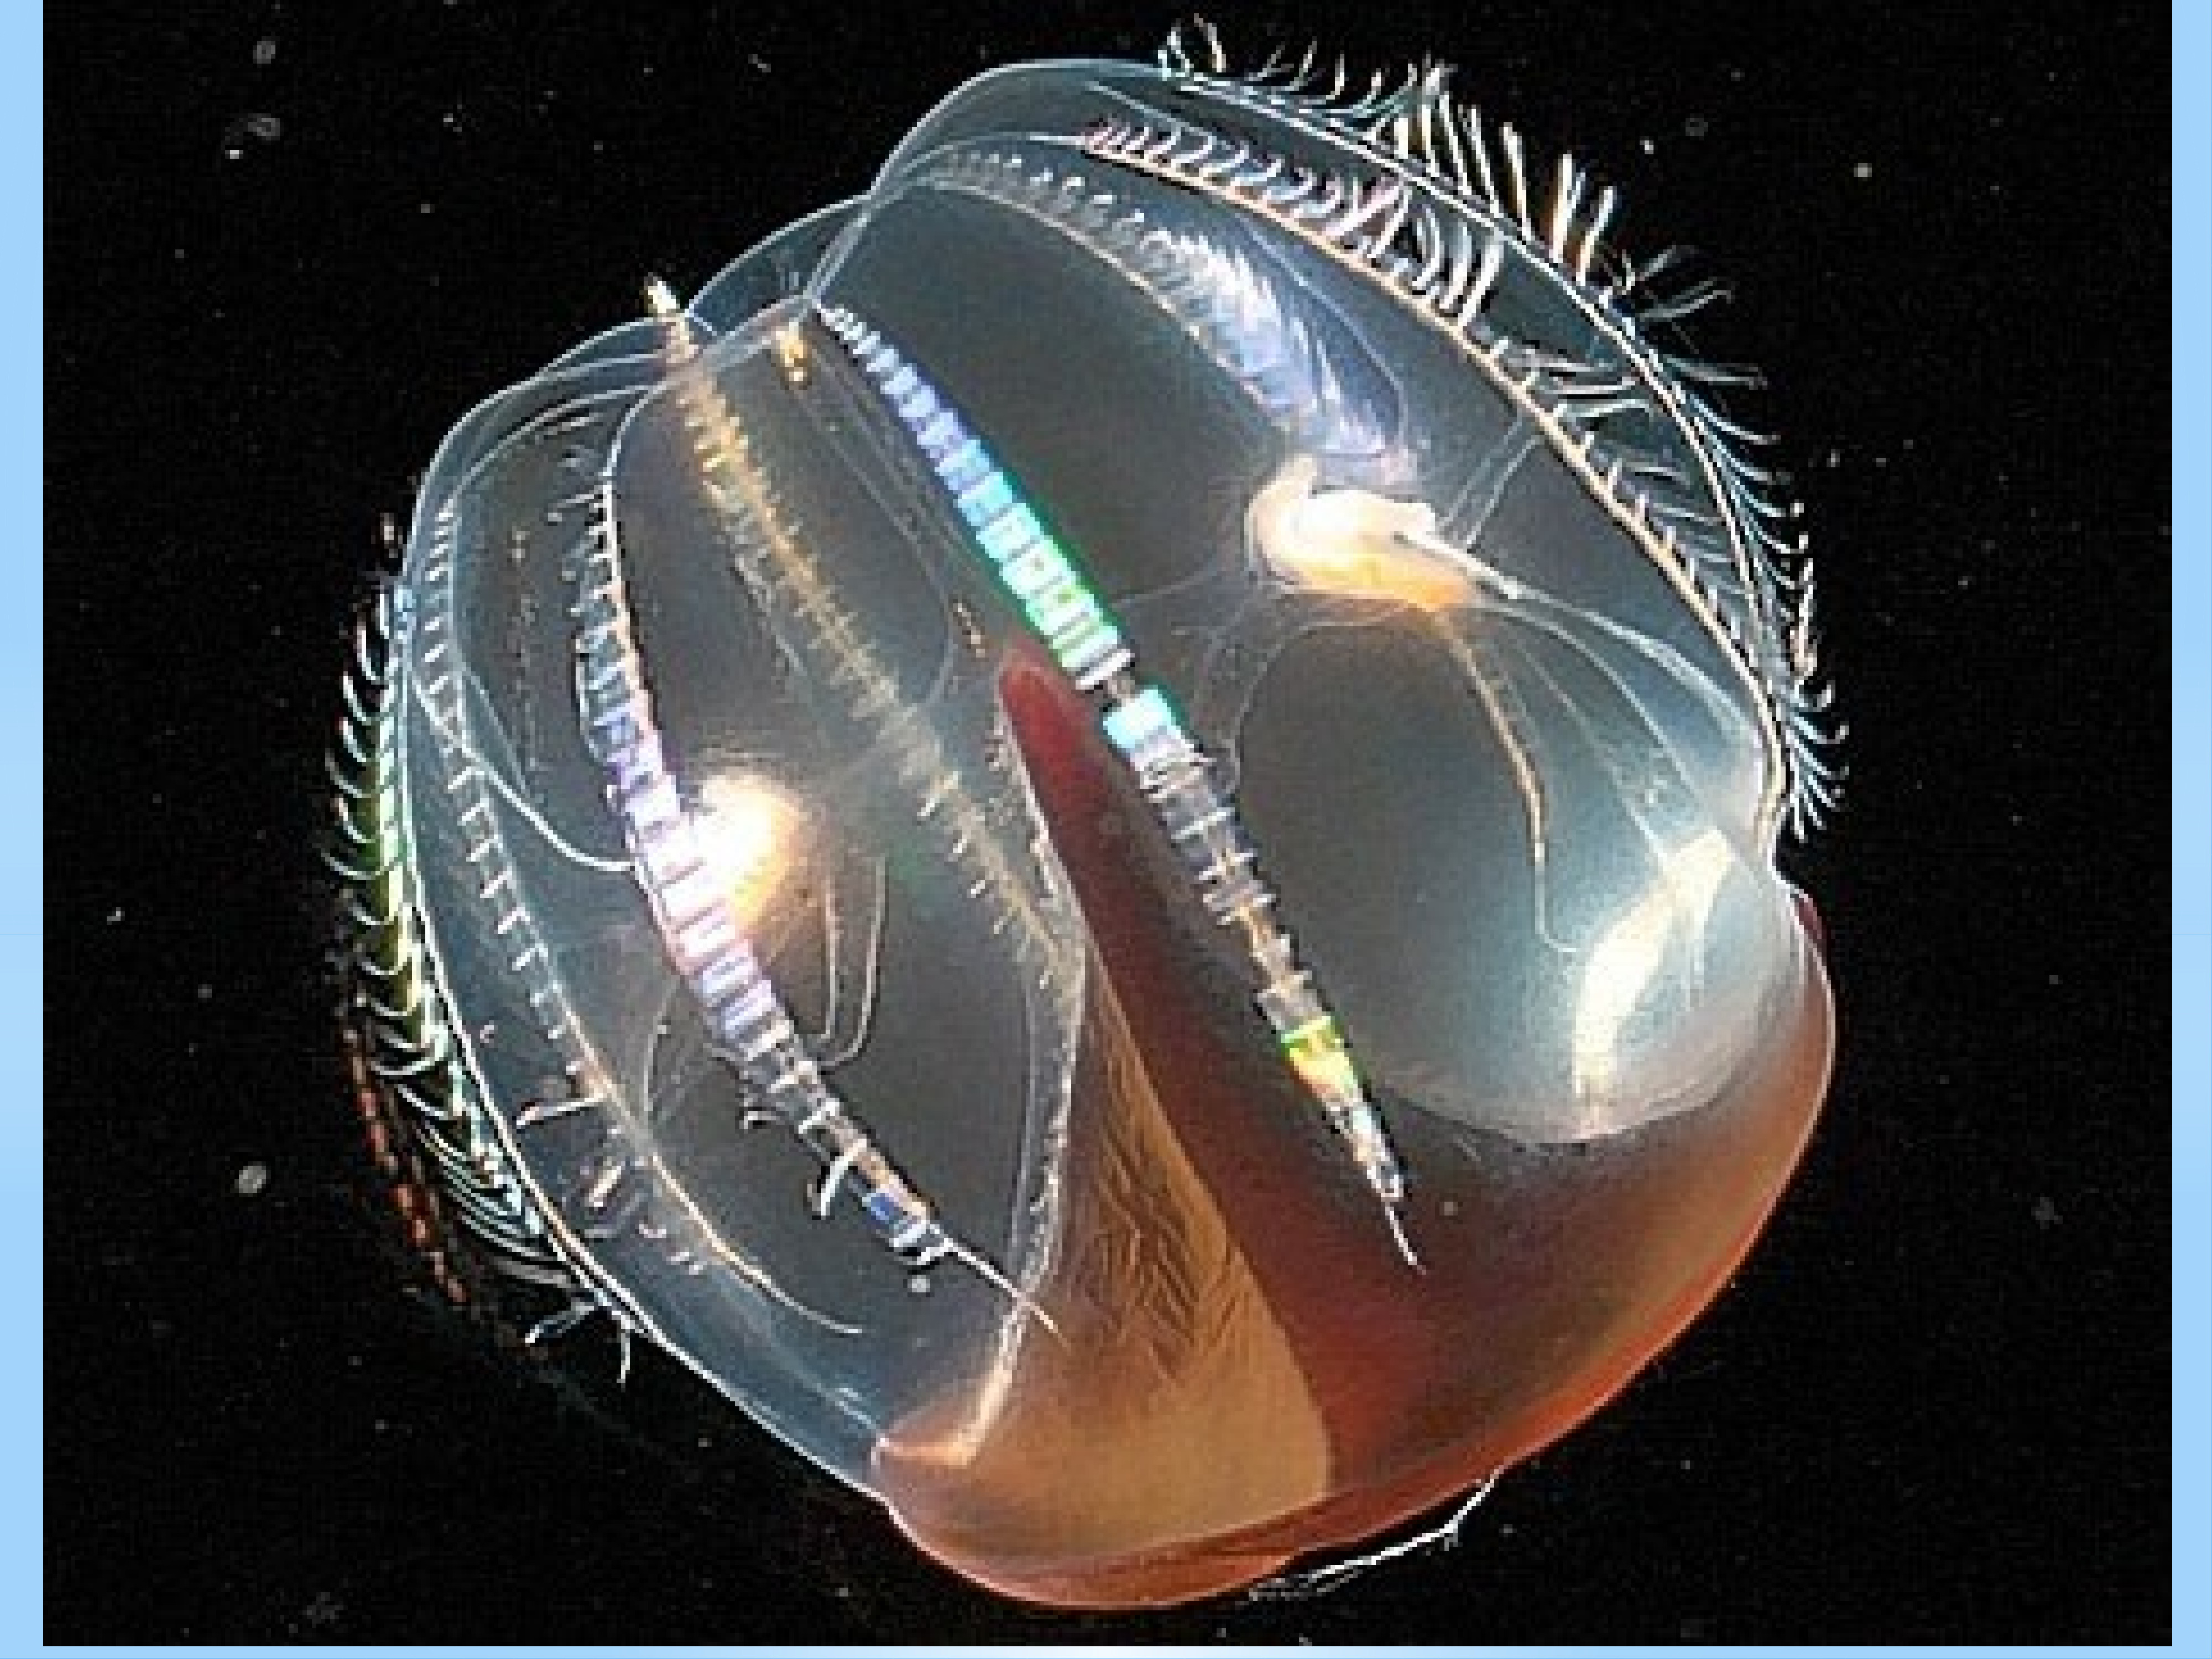 Comb jellies